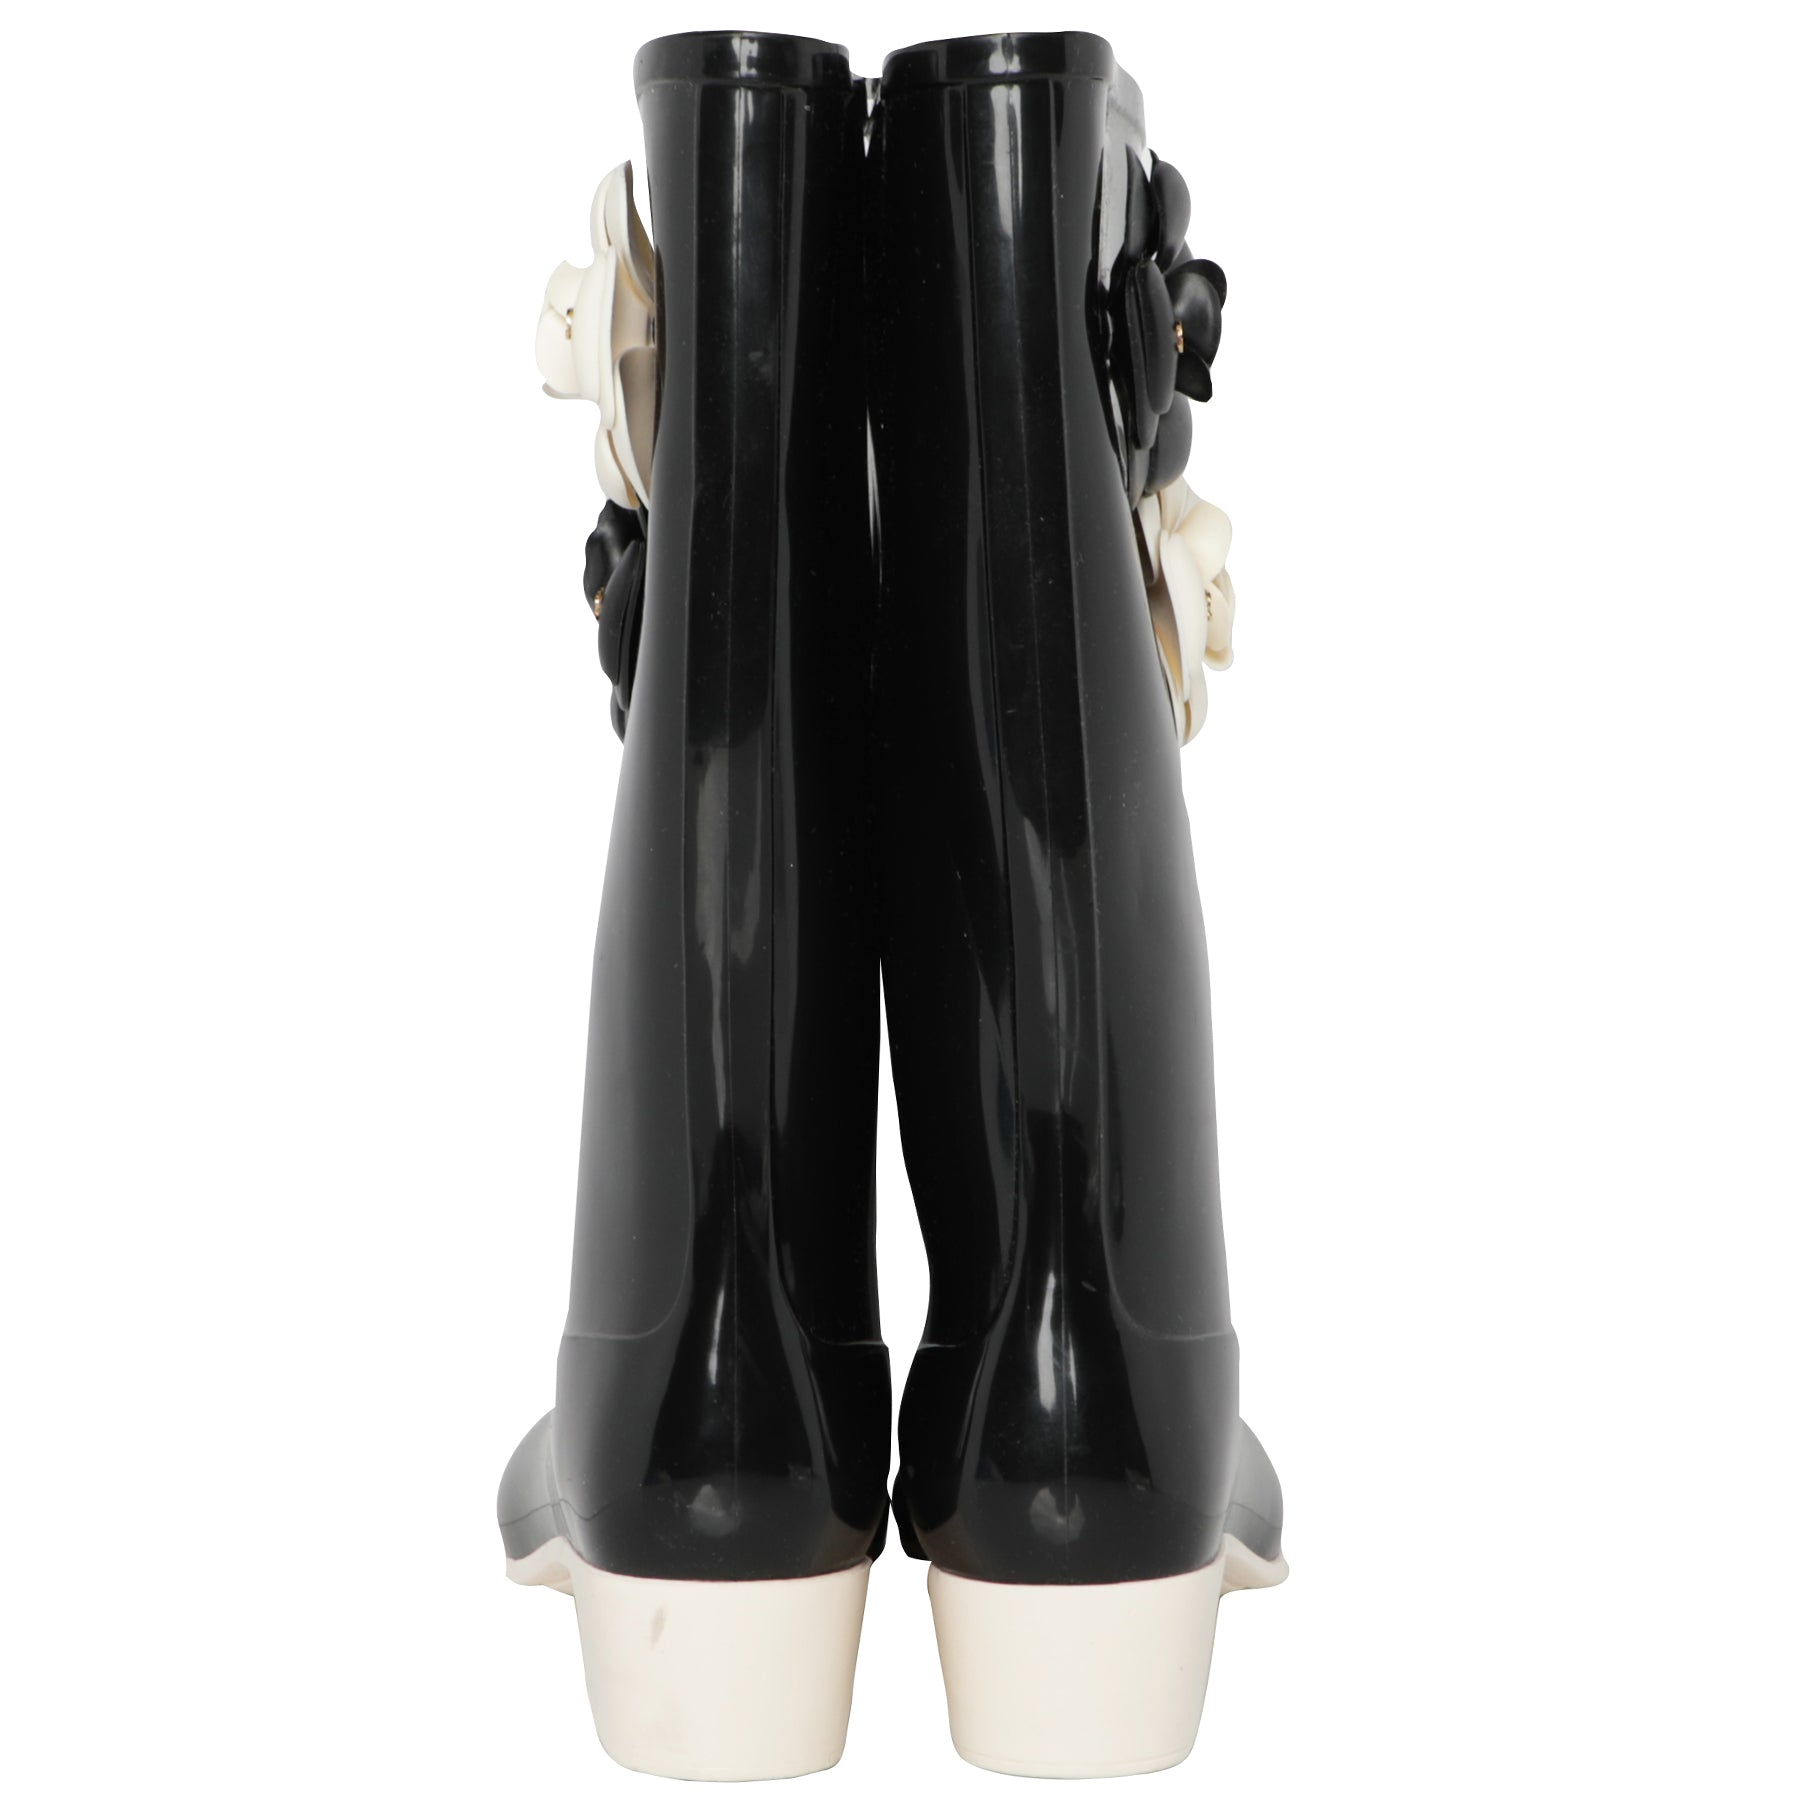 Chanel Caoutchouk CC High Rain Boots Rubber Black 2200102